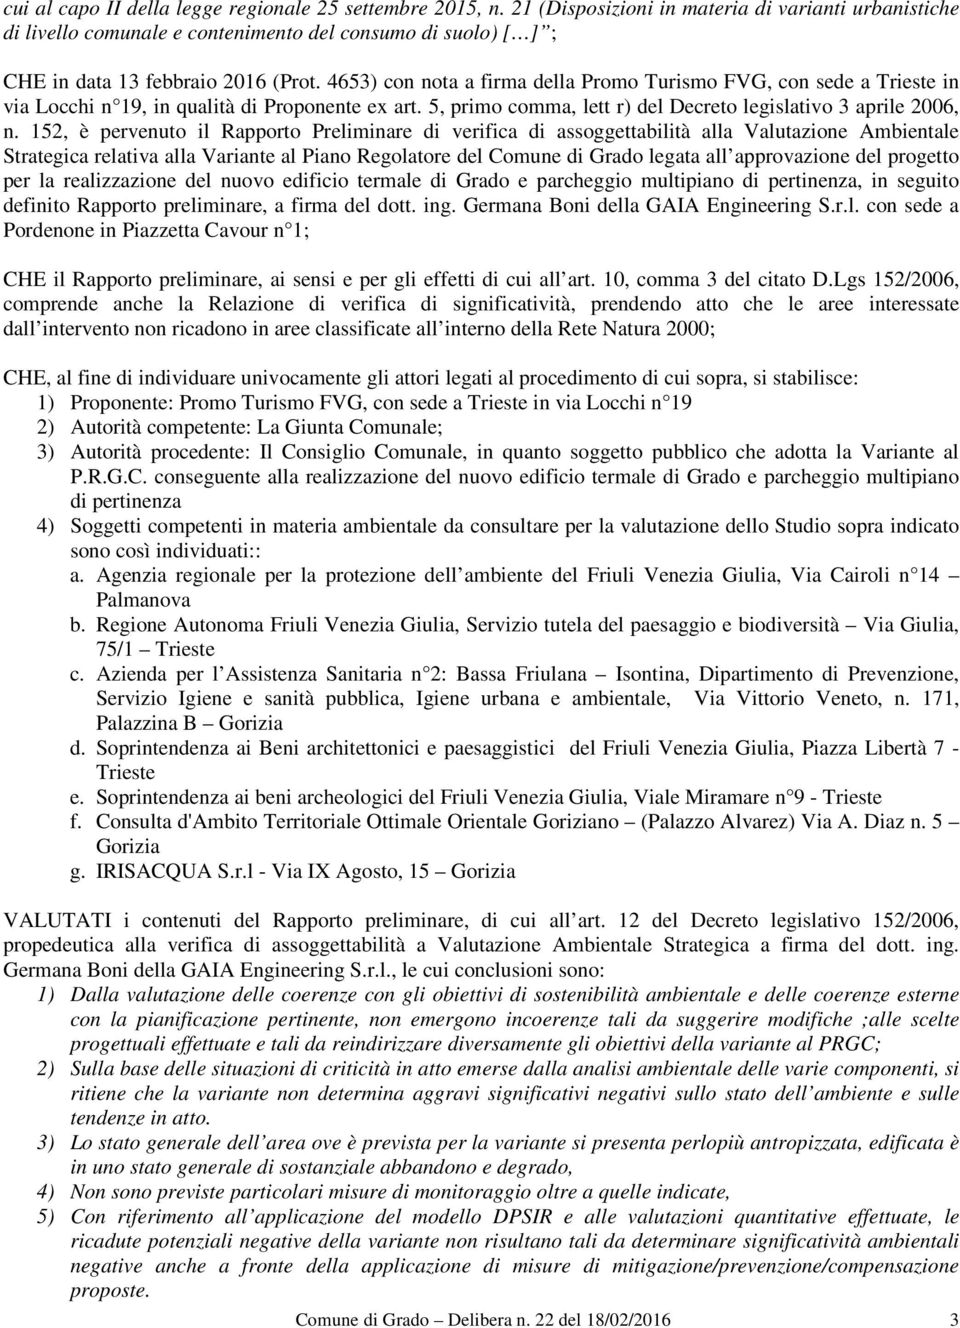 4653) con nota a firma della Promo Turismo FVG, con sede a Trieste in via Locchi n 19, in qualità di Proponente ex art. 5, primo comma, lett r) del Decreto legislativo 3 aprile 2006, n.